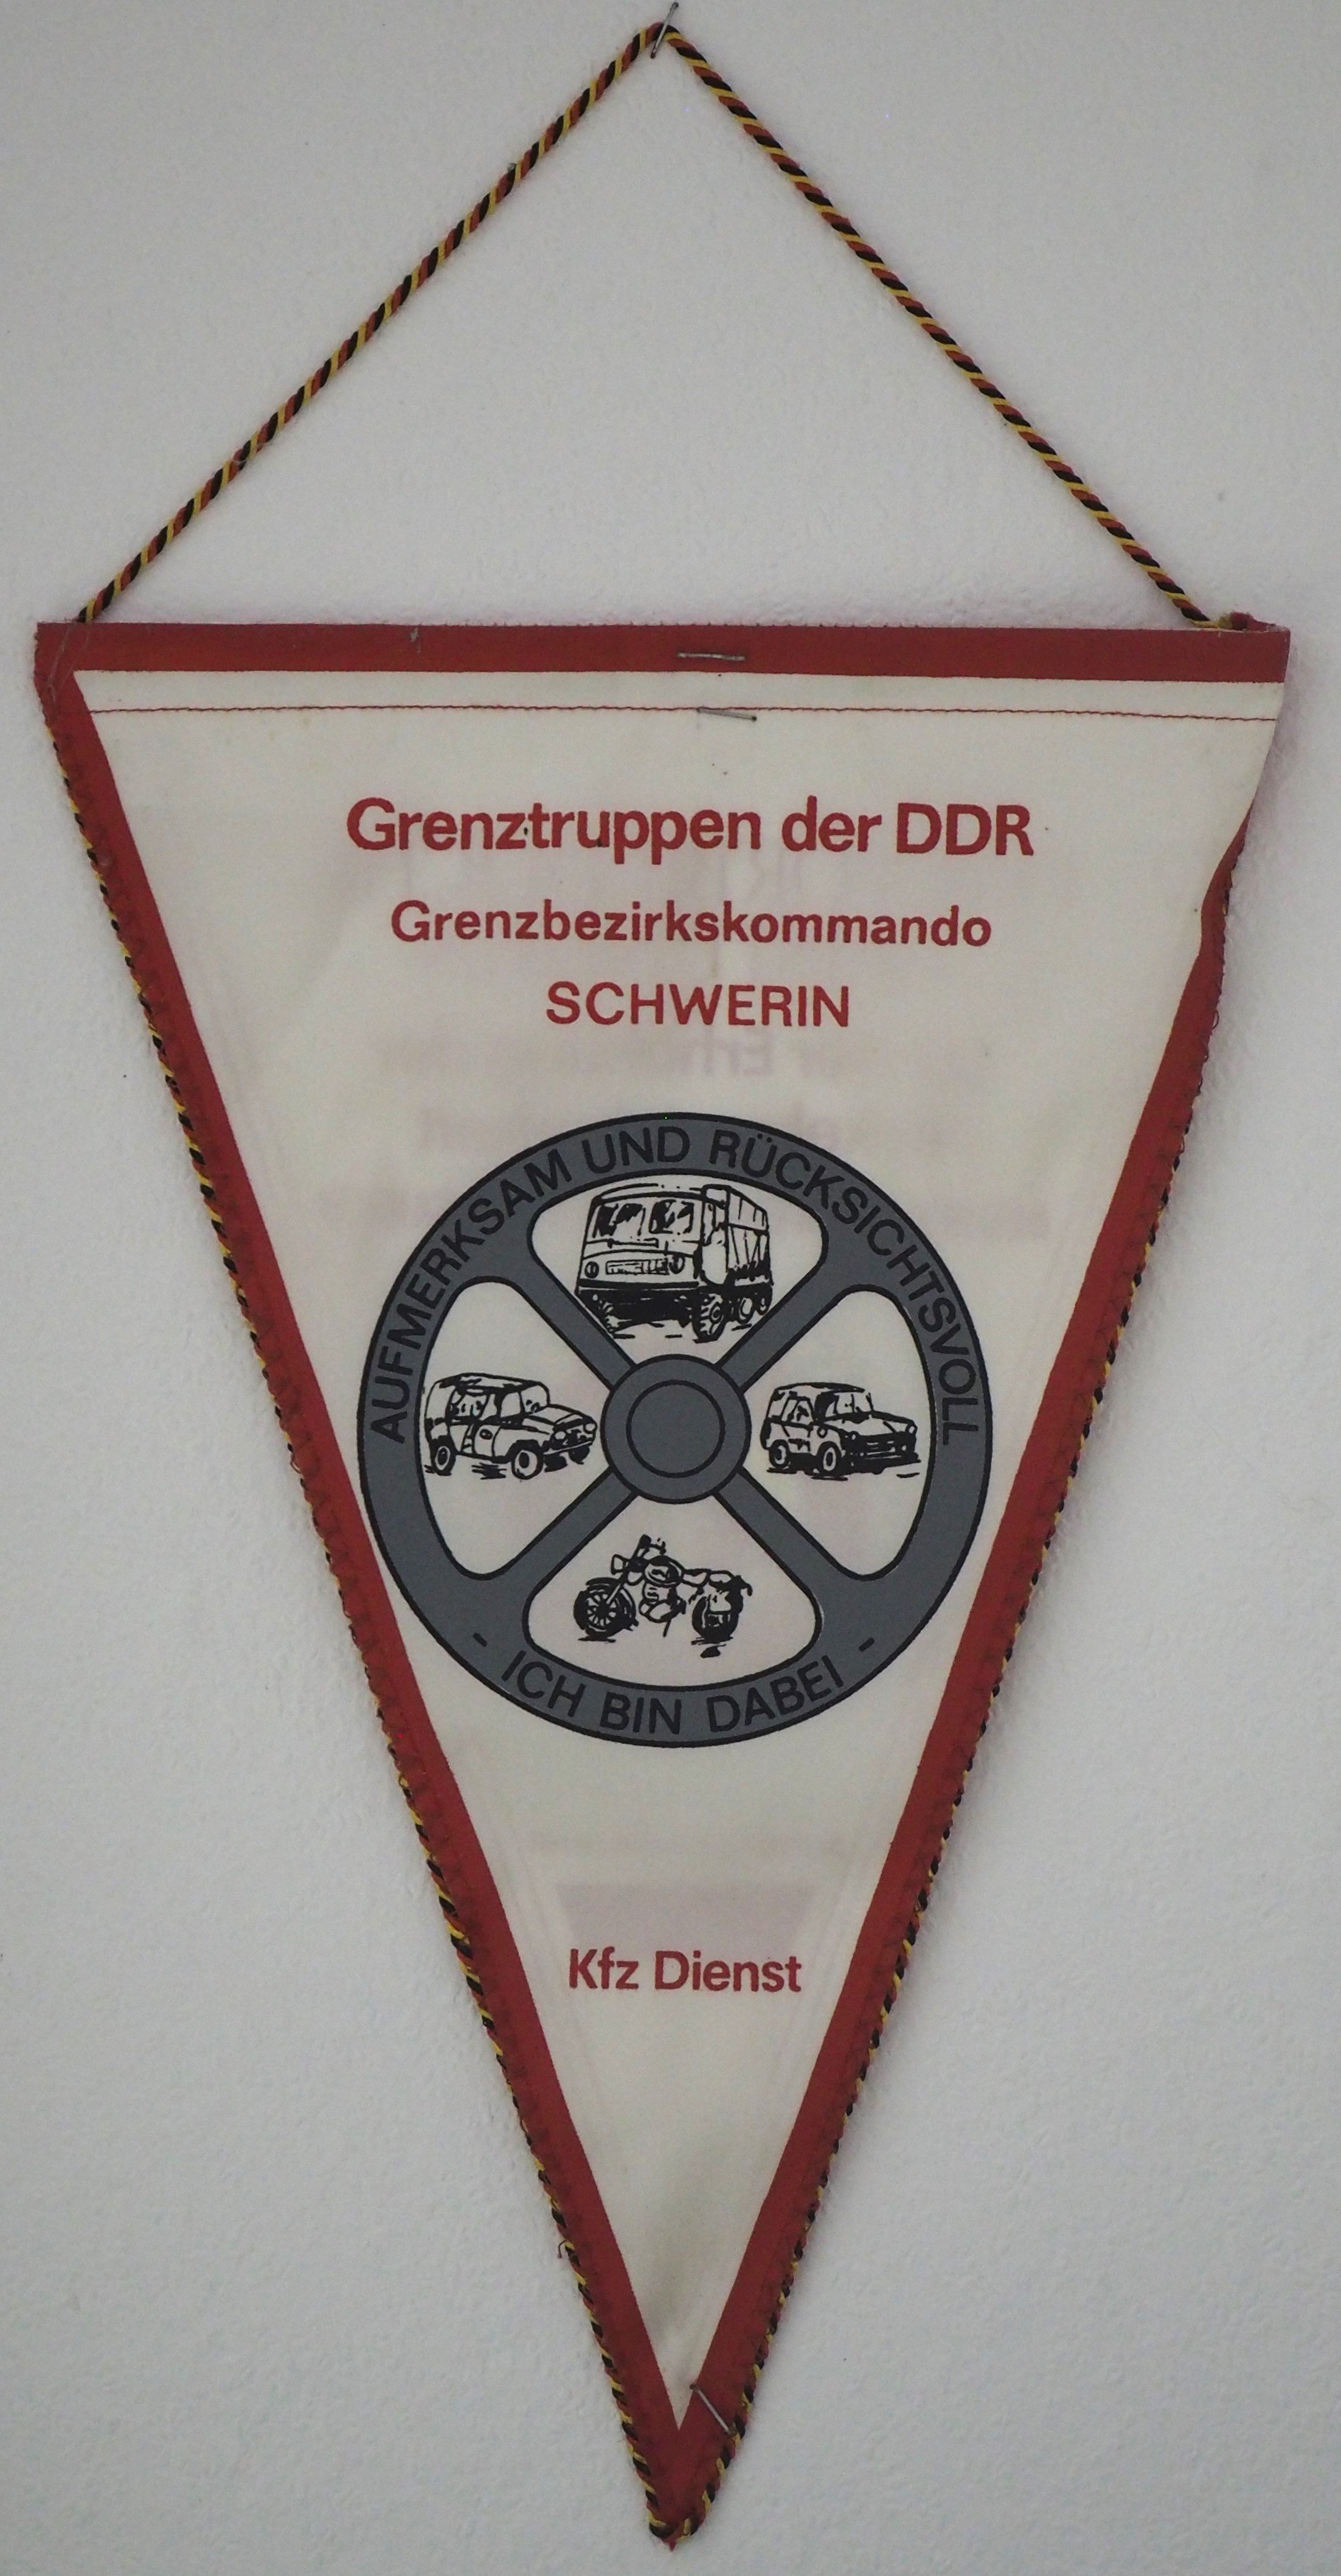 Transparent: Menschenrechte (DDR Geschichtsmuseum im Dokumentationszentrum Perleberg CC BY-SA)